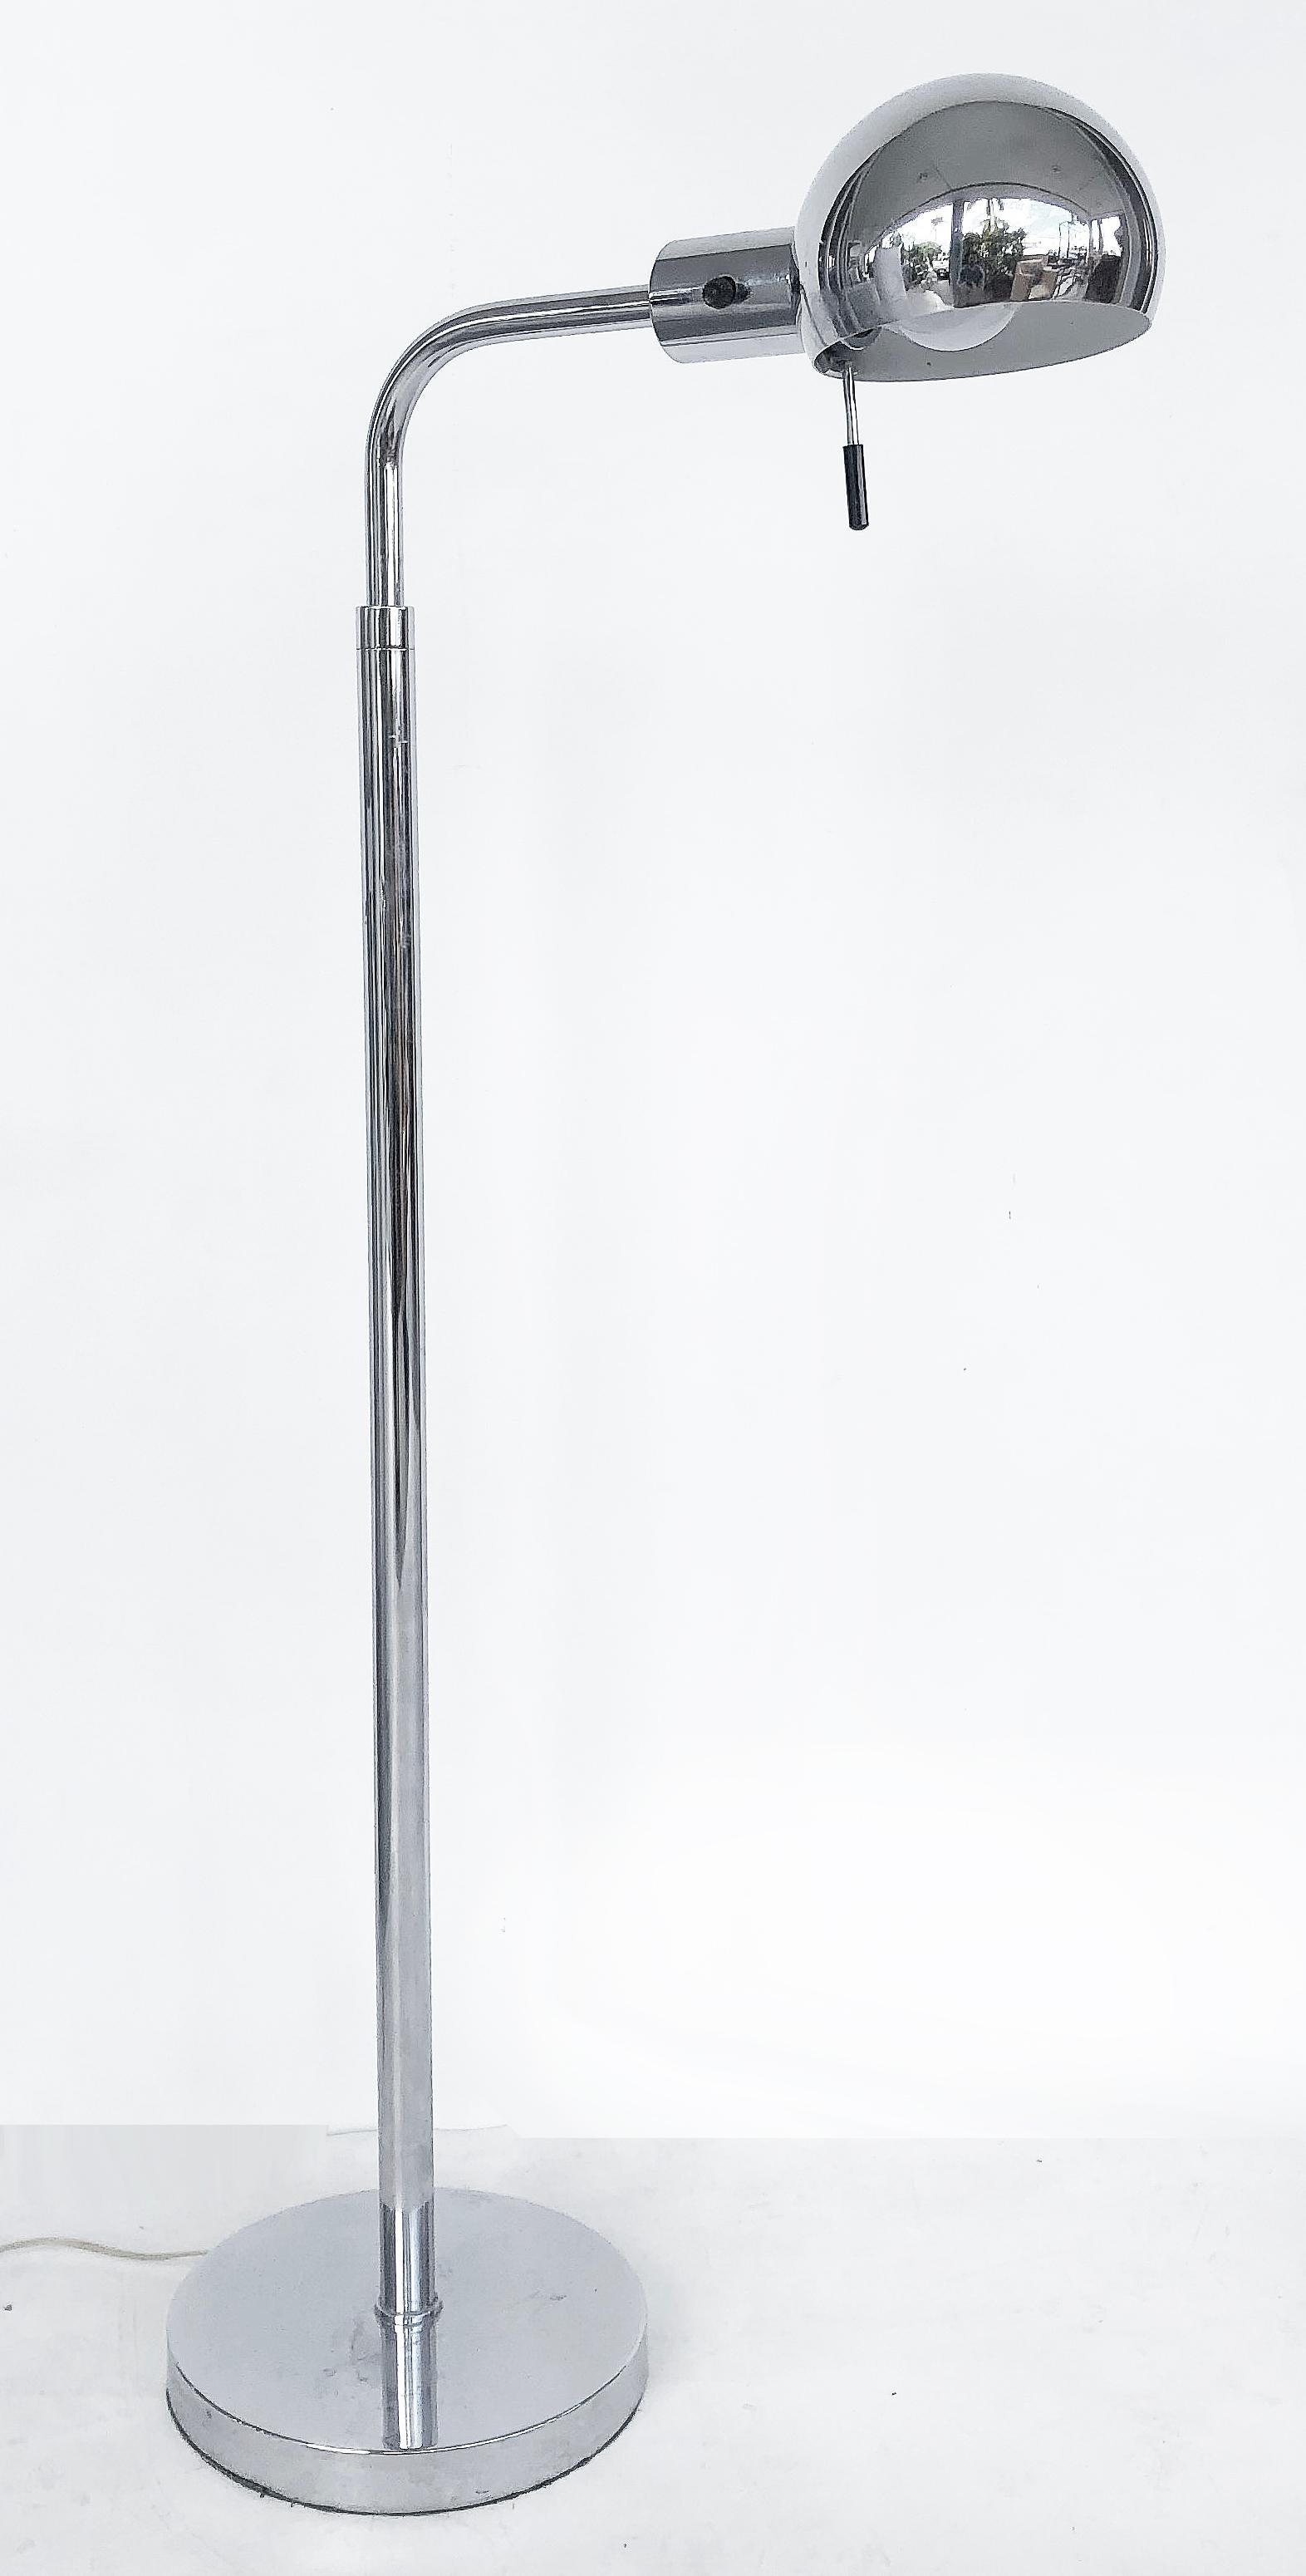 Vintage Koch & Lowy Chrom verstellbare Stehleuchte

Zum Verkauf angeboten wird eine verchromte Stehlampe von Koch & Lowy aus den 1980er Jahren mit einem verstellbaren Kopf. Im voll ausgefahrenen Zustand beträgt die Höhe 61 1/2